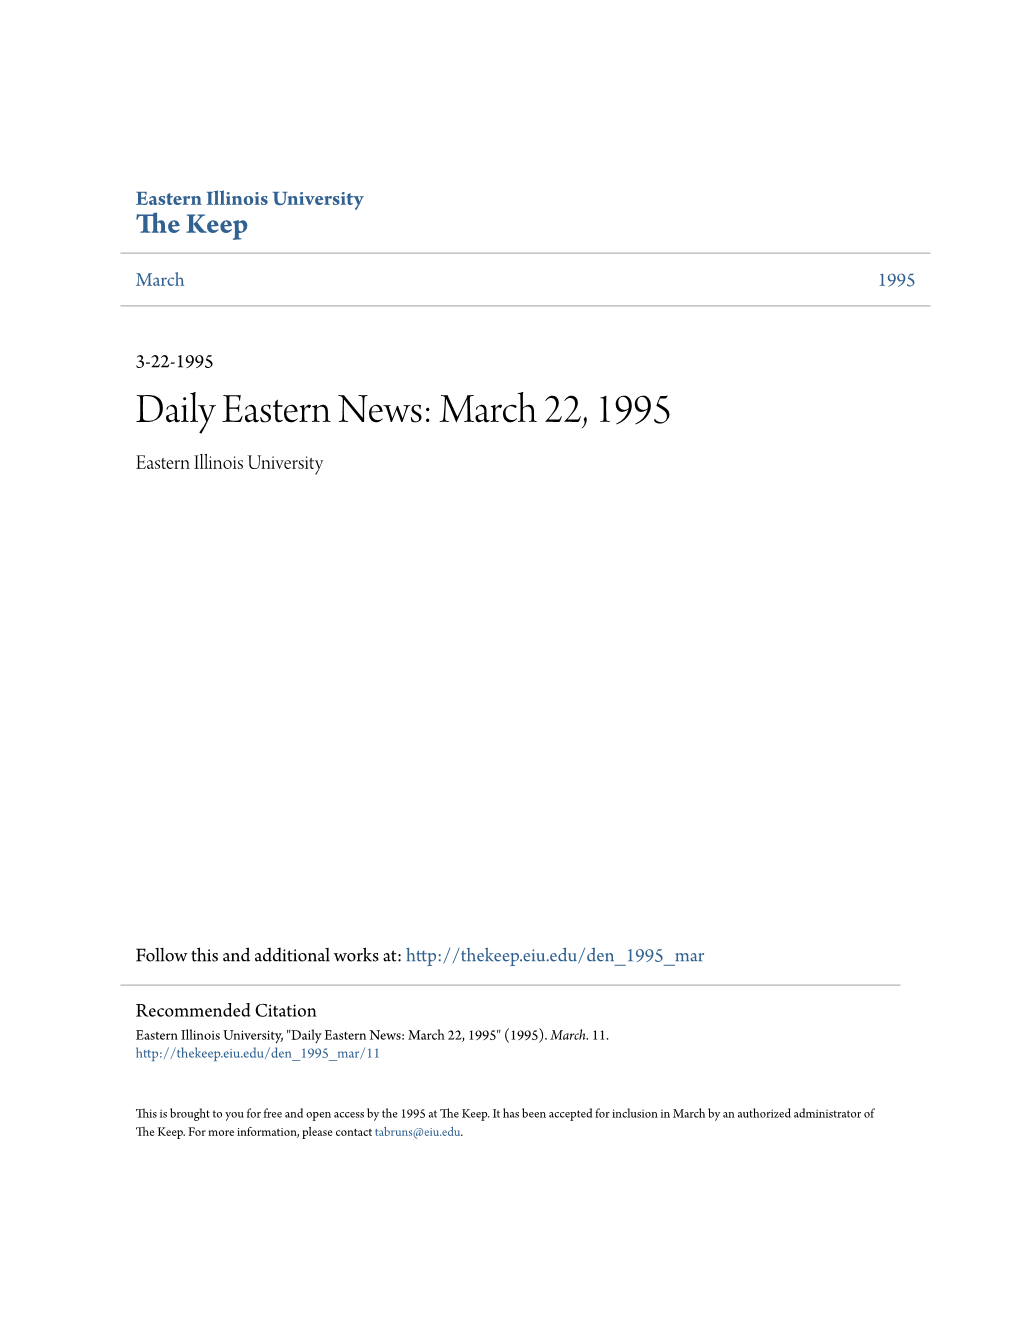 March 22, 1995 Eastern Illinois University